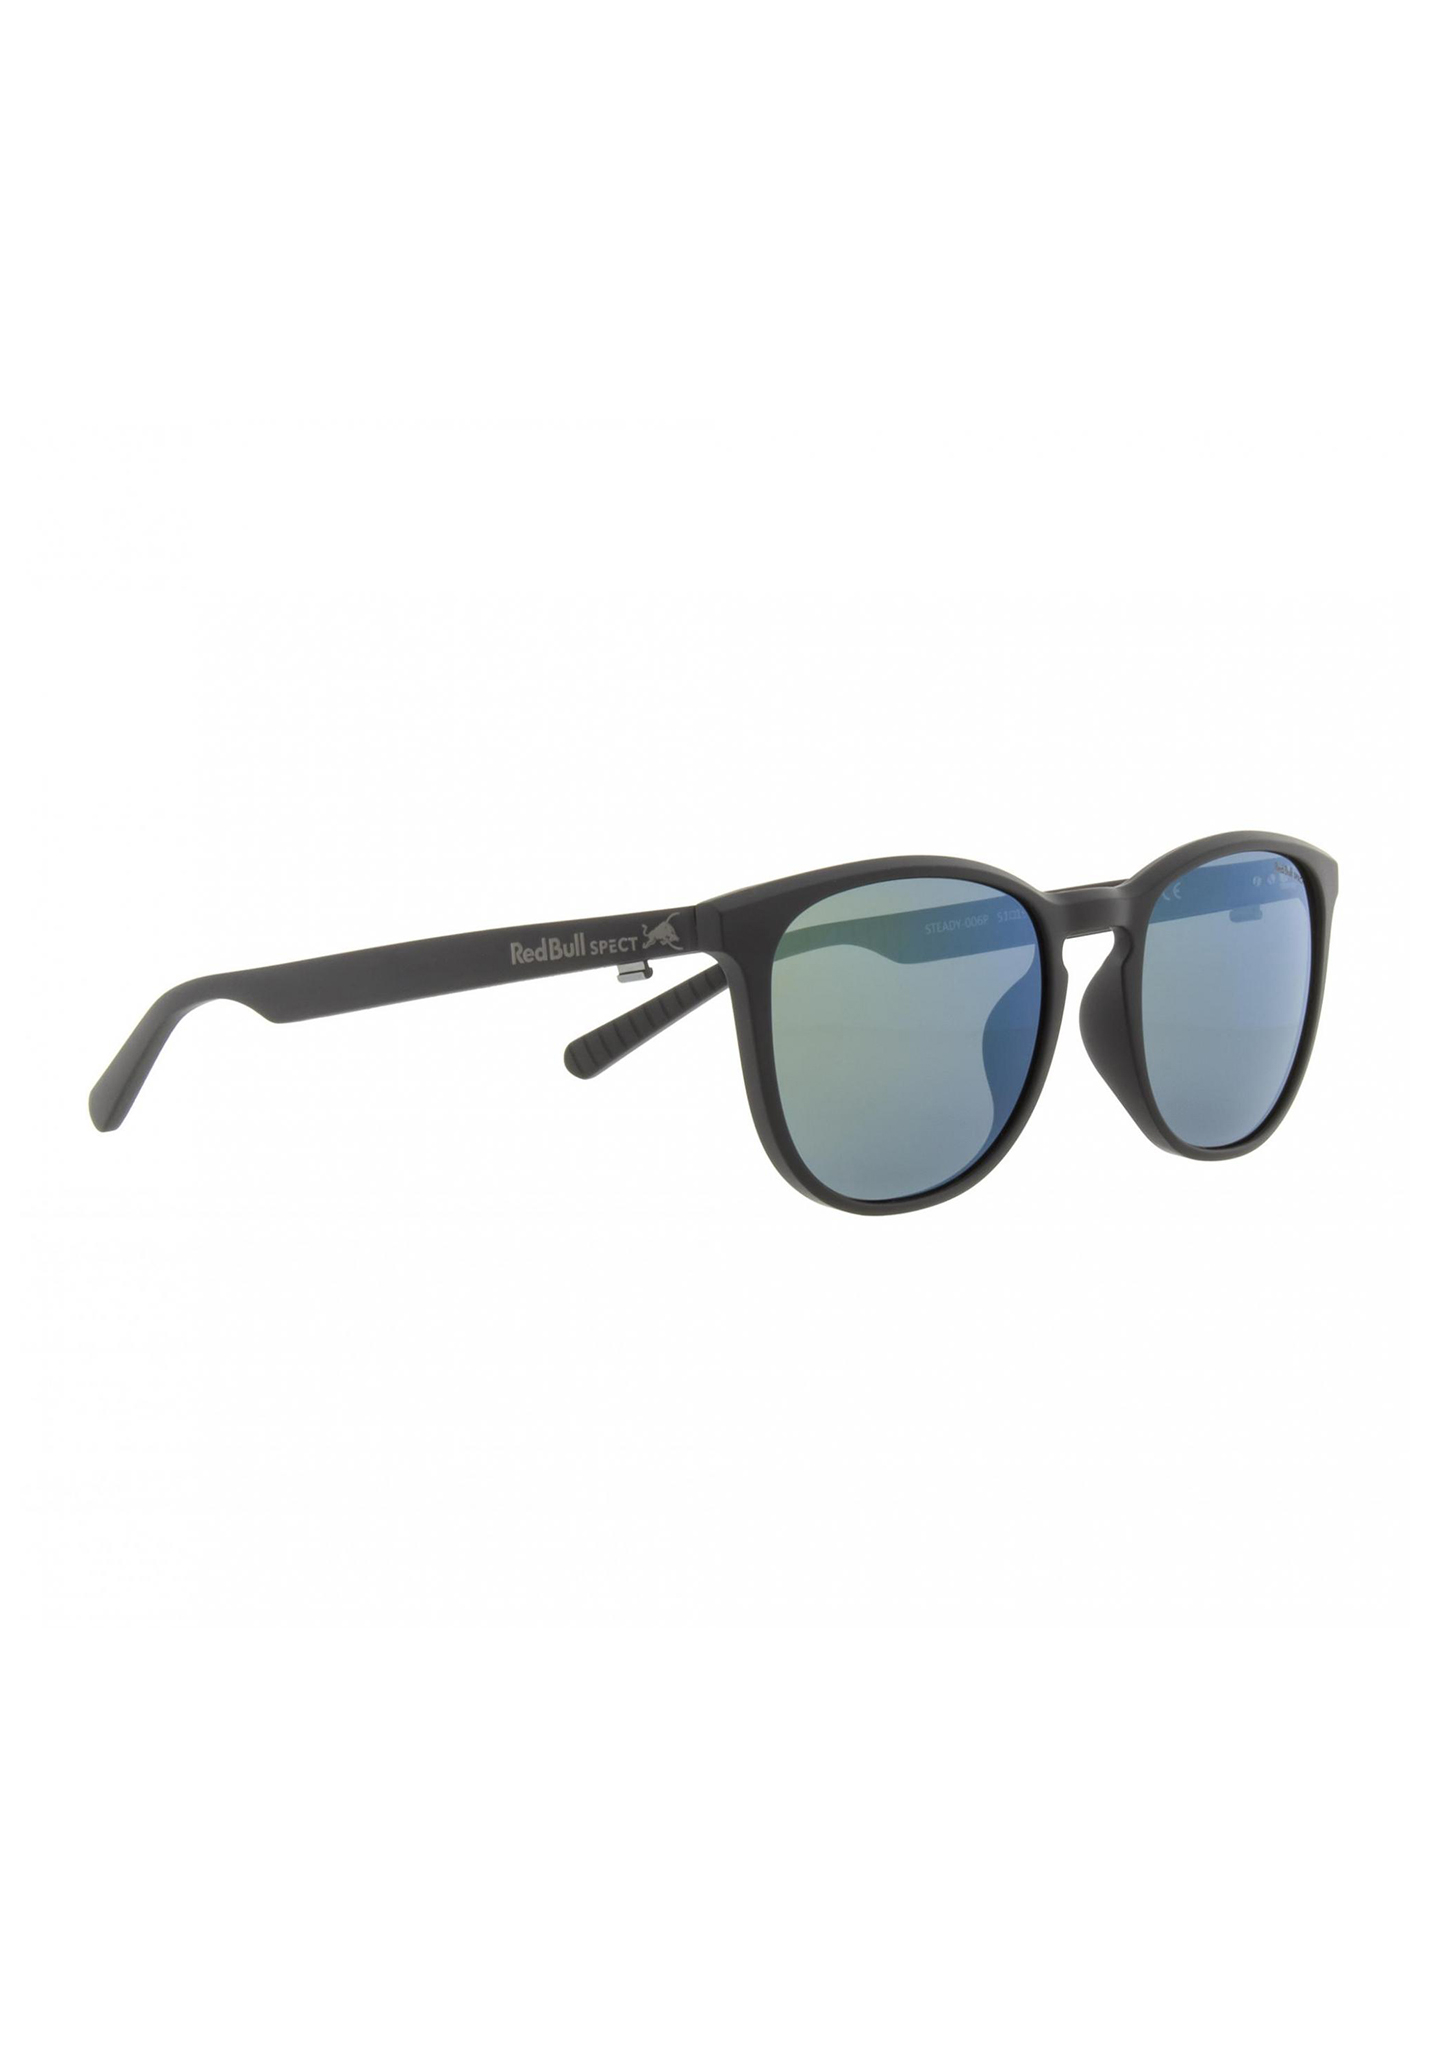 Red Bull SPECT Eyewear Steady Sonnenbrillen schwarz/rauch mit grünem spiegel pol One Size